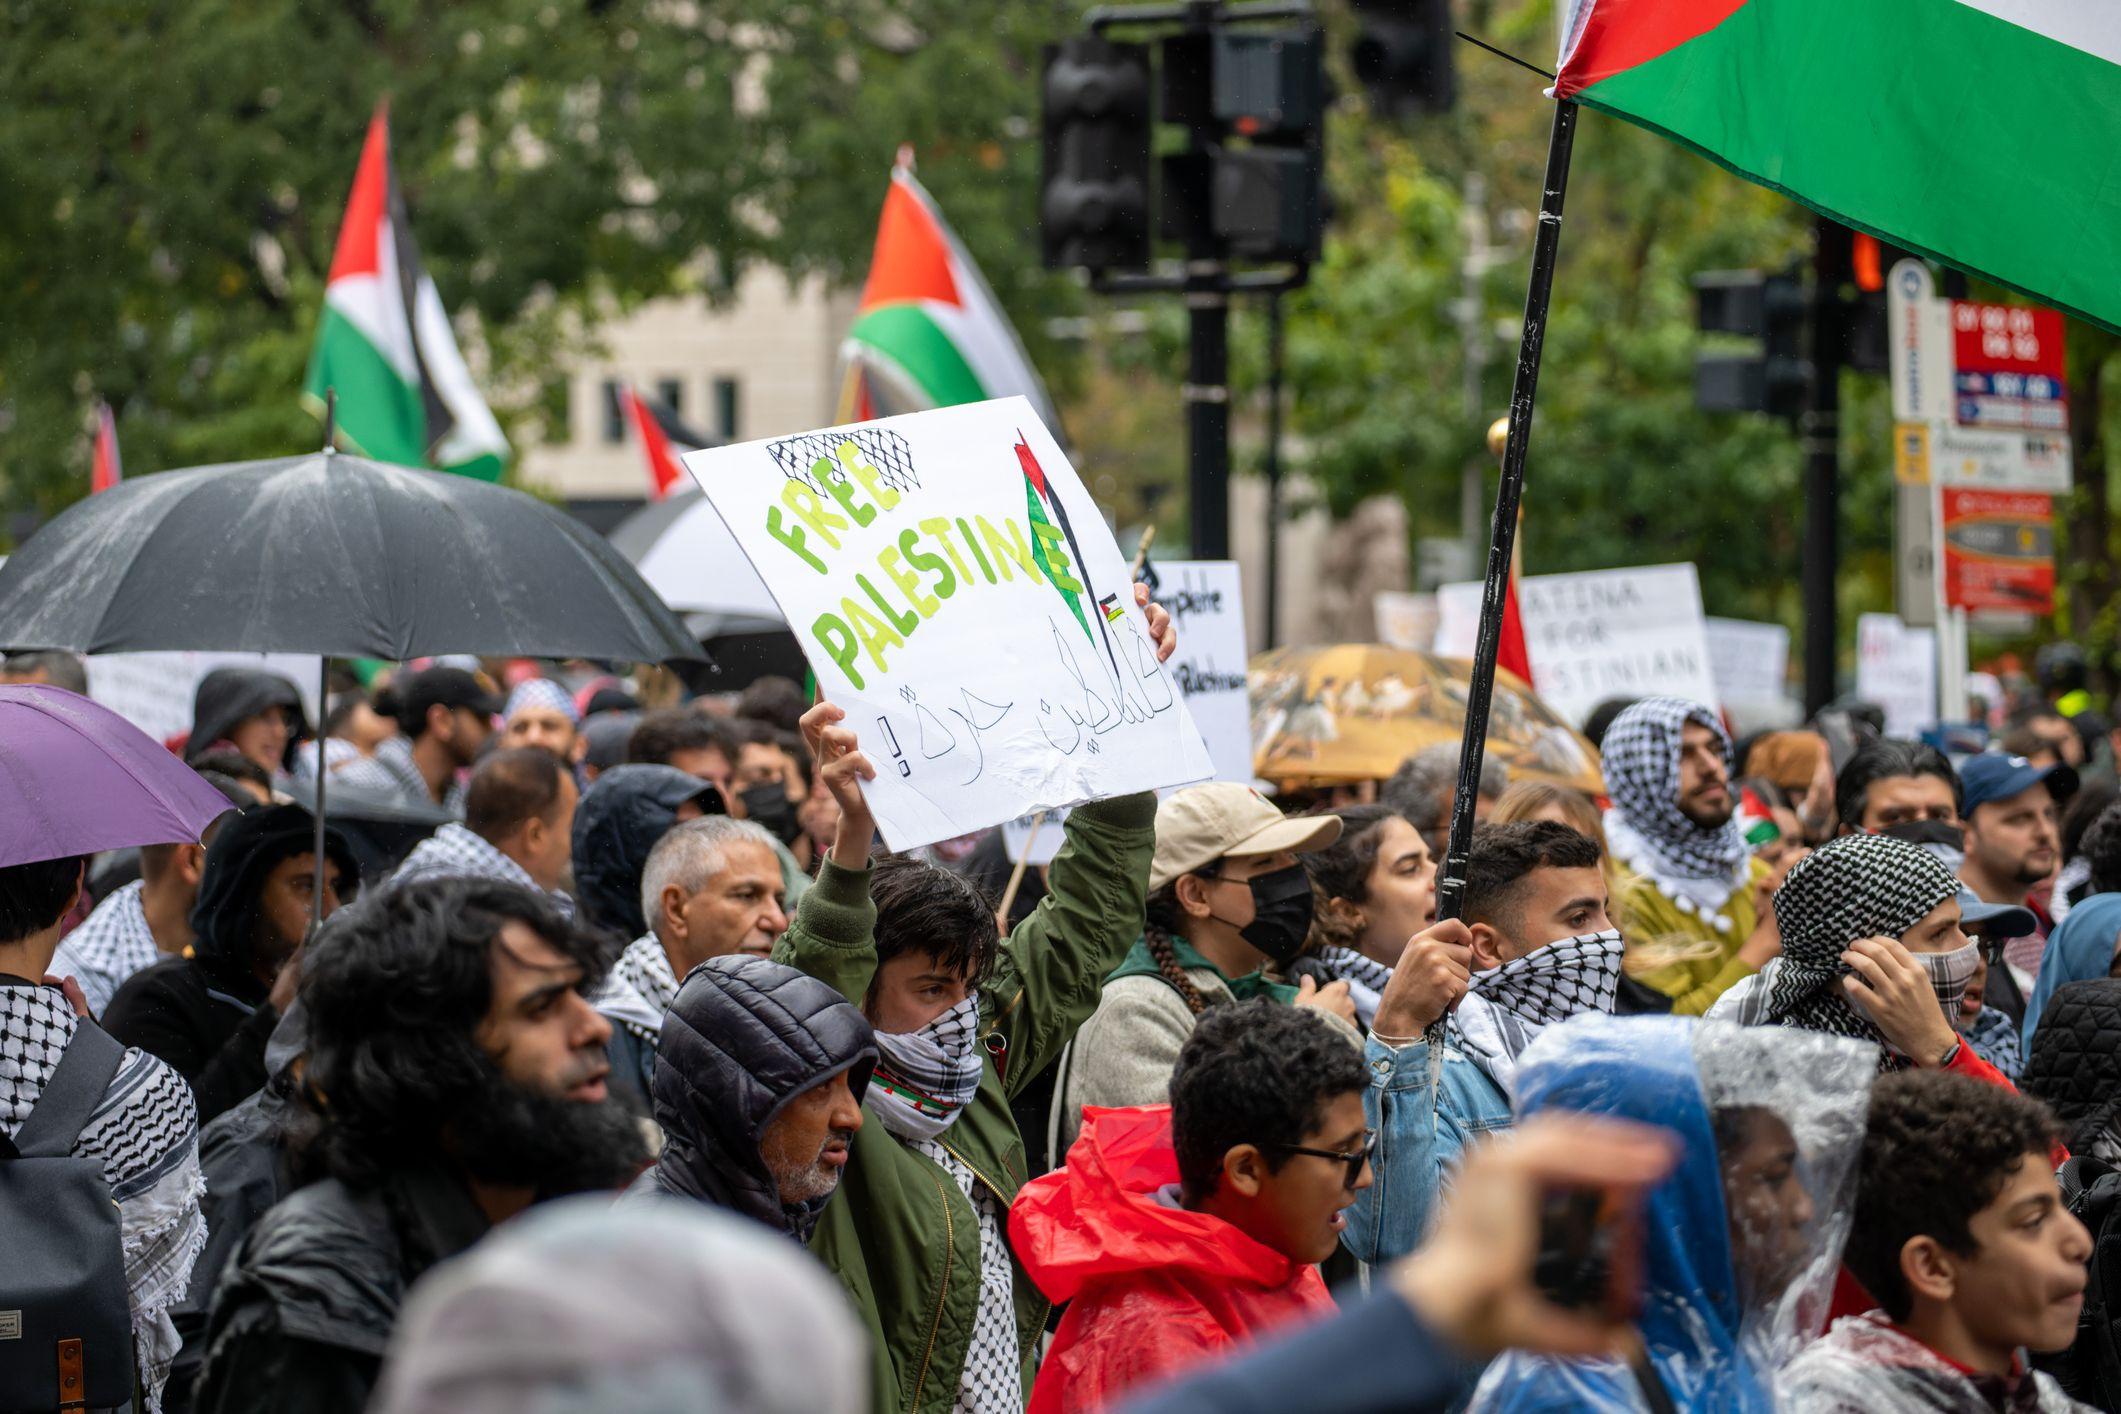 Nu doar în România oamenii au ieșit să protesteze în solidaritate cu cauza palestiniană. În imagine, un protest pro-palestinian în Londra, 14 octombrie 2023. Foto © Sabih Jafri | Dreamstime.com